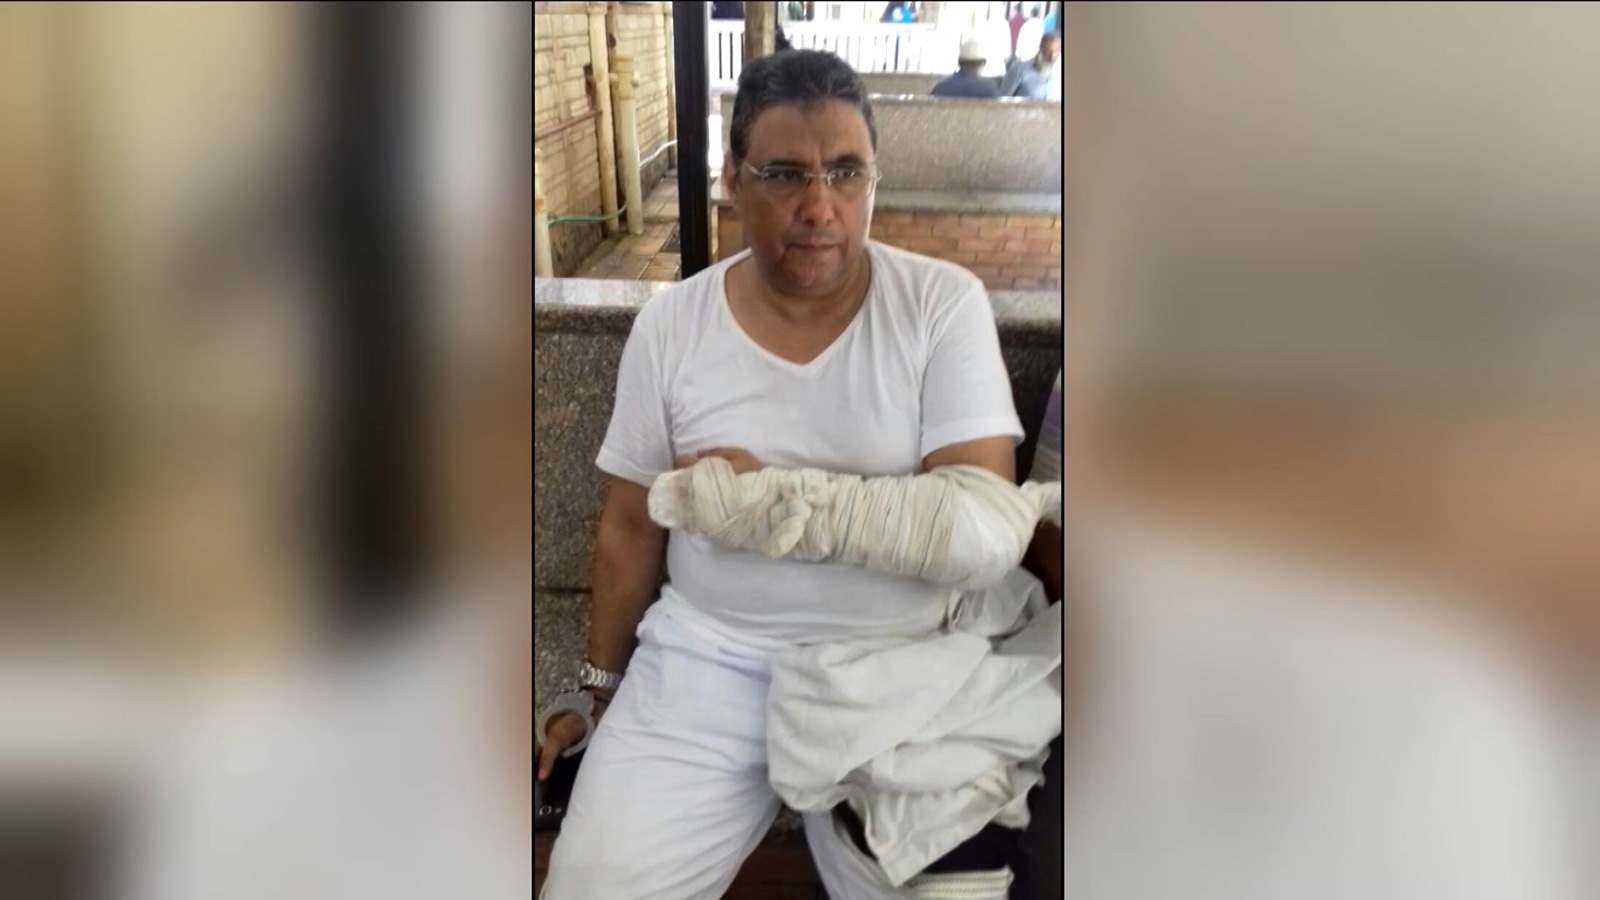 الزميل محمود حسين بعد أن تعرض لكسر مضاعف في يده اليسرى، ولم تسمح له سلطات المعتقل بالعلاج  (الجزيرة)